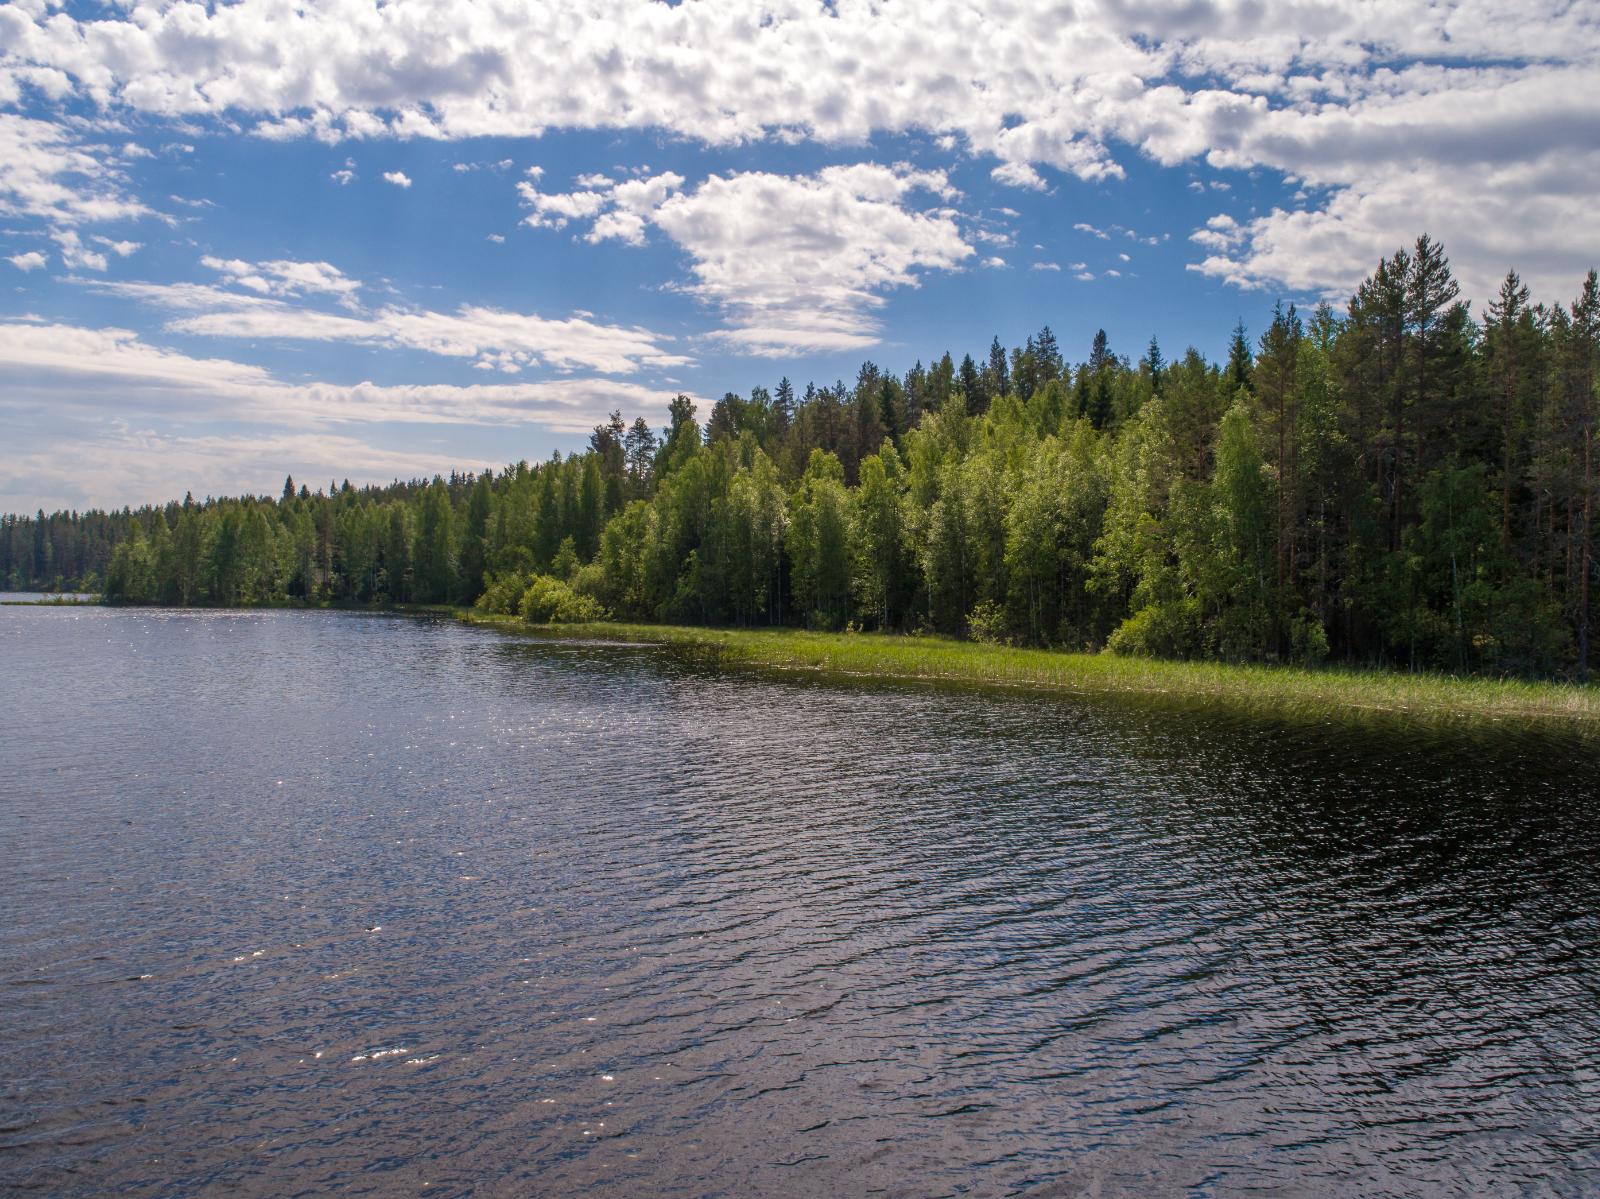 Kesämaisemassa sekametsä reunustaa järveä vasemmalle kaartavassa rantaviivassa.